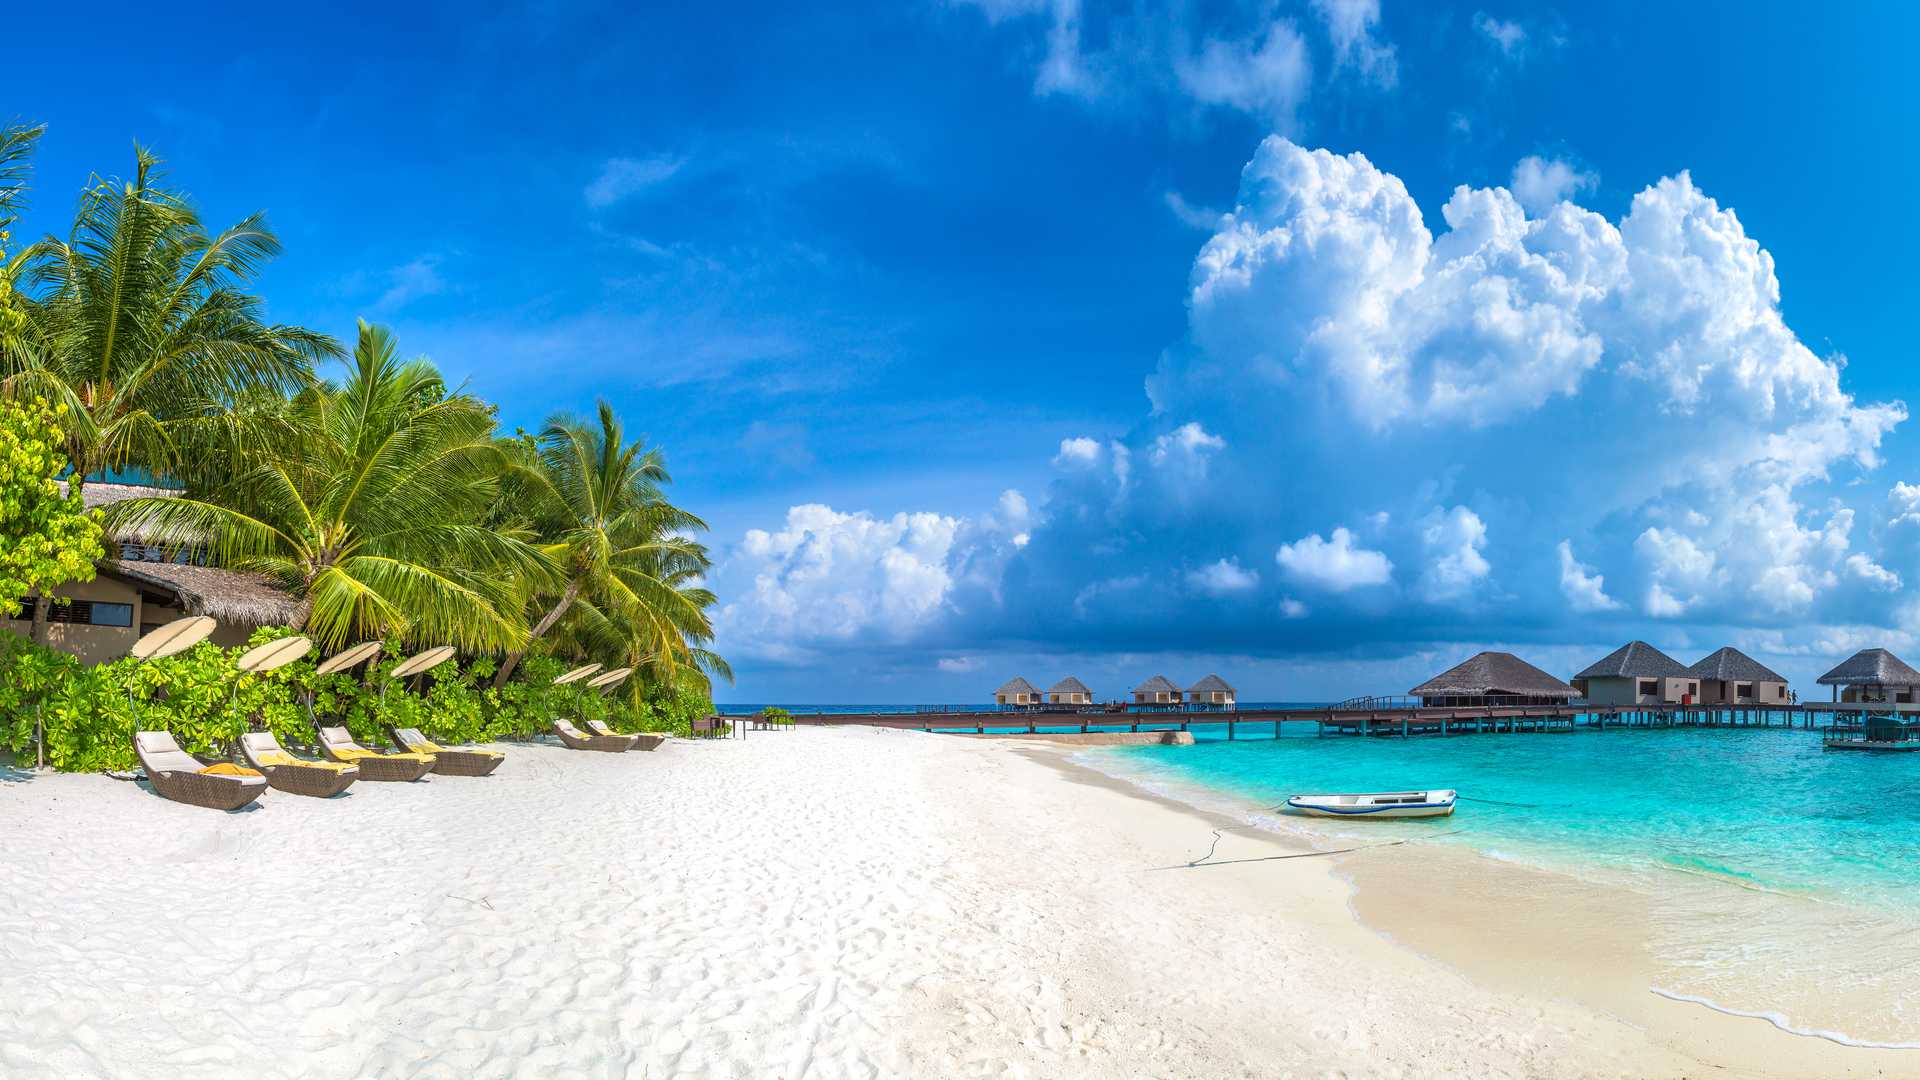 Male, Maledivy, nejlevnější letenka : tip na trip